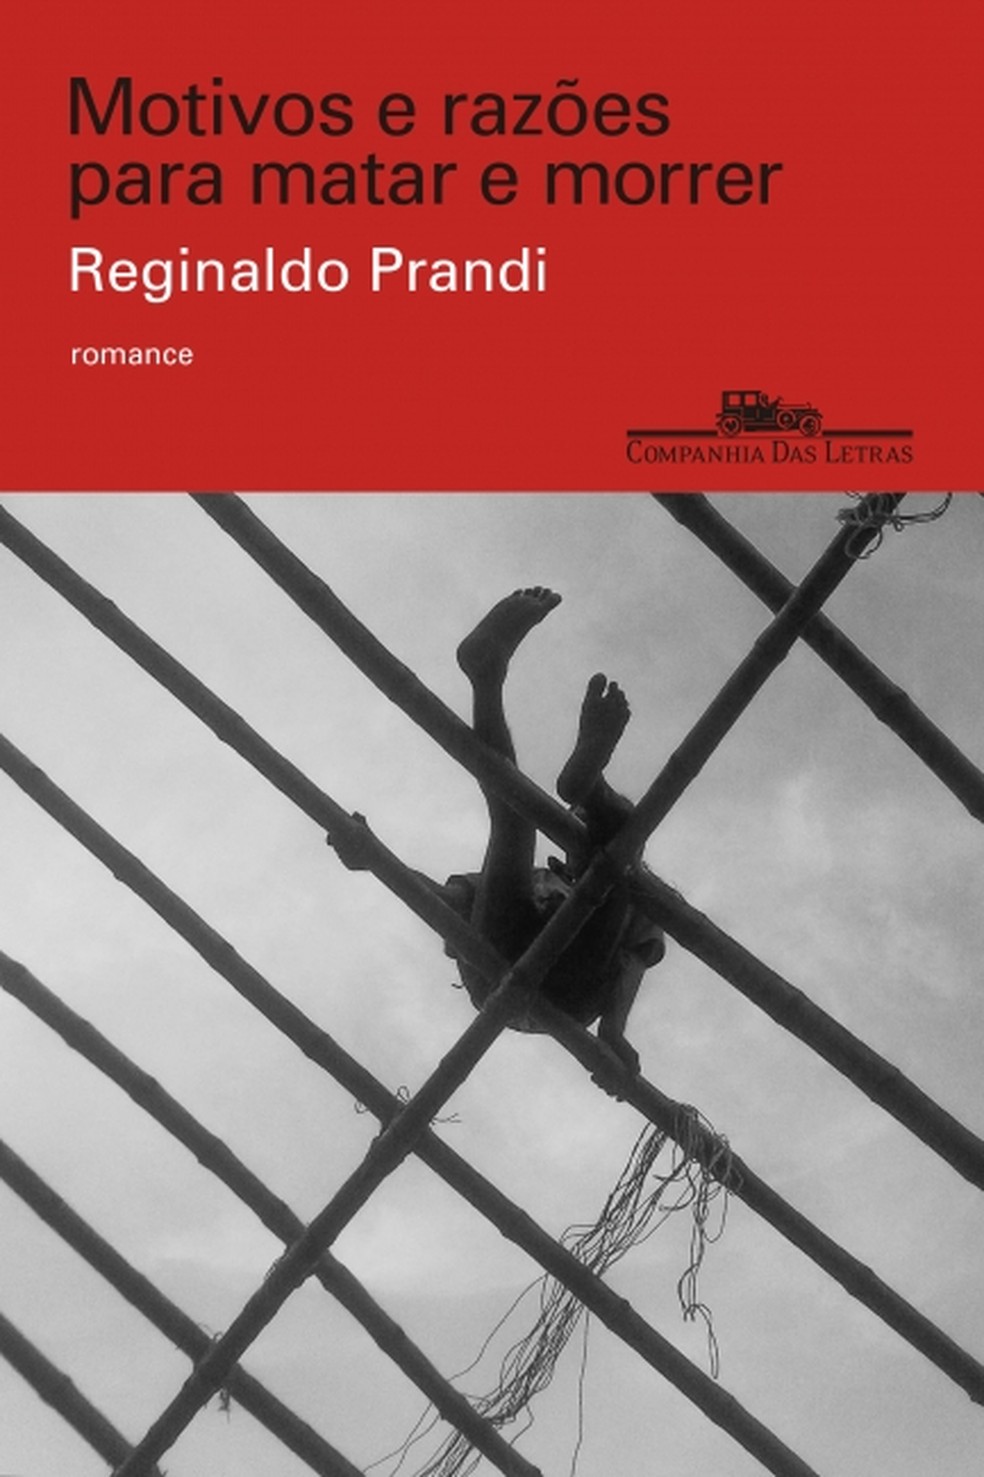 Capa de "Motivos e razões para matar e morrer", romance de Reginaldo Prandi lançado pela Companhia das Letras Divulgação — Foto:         